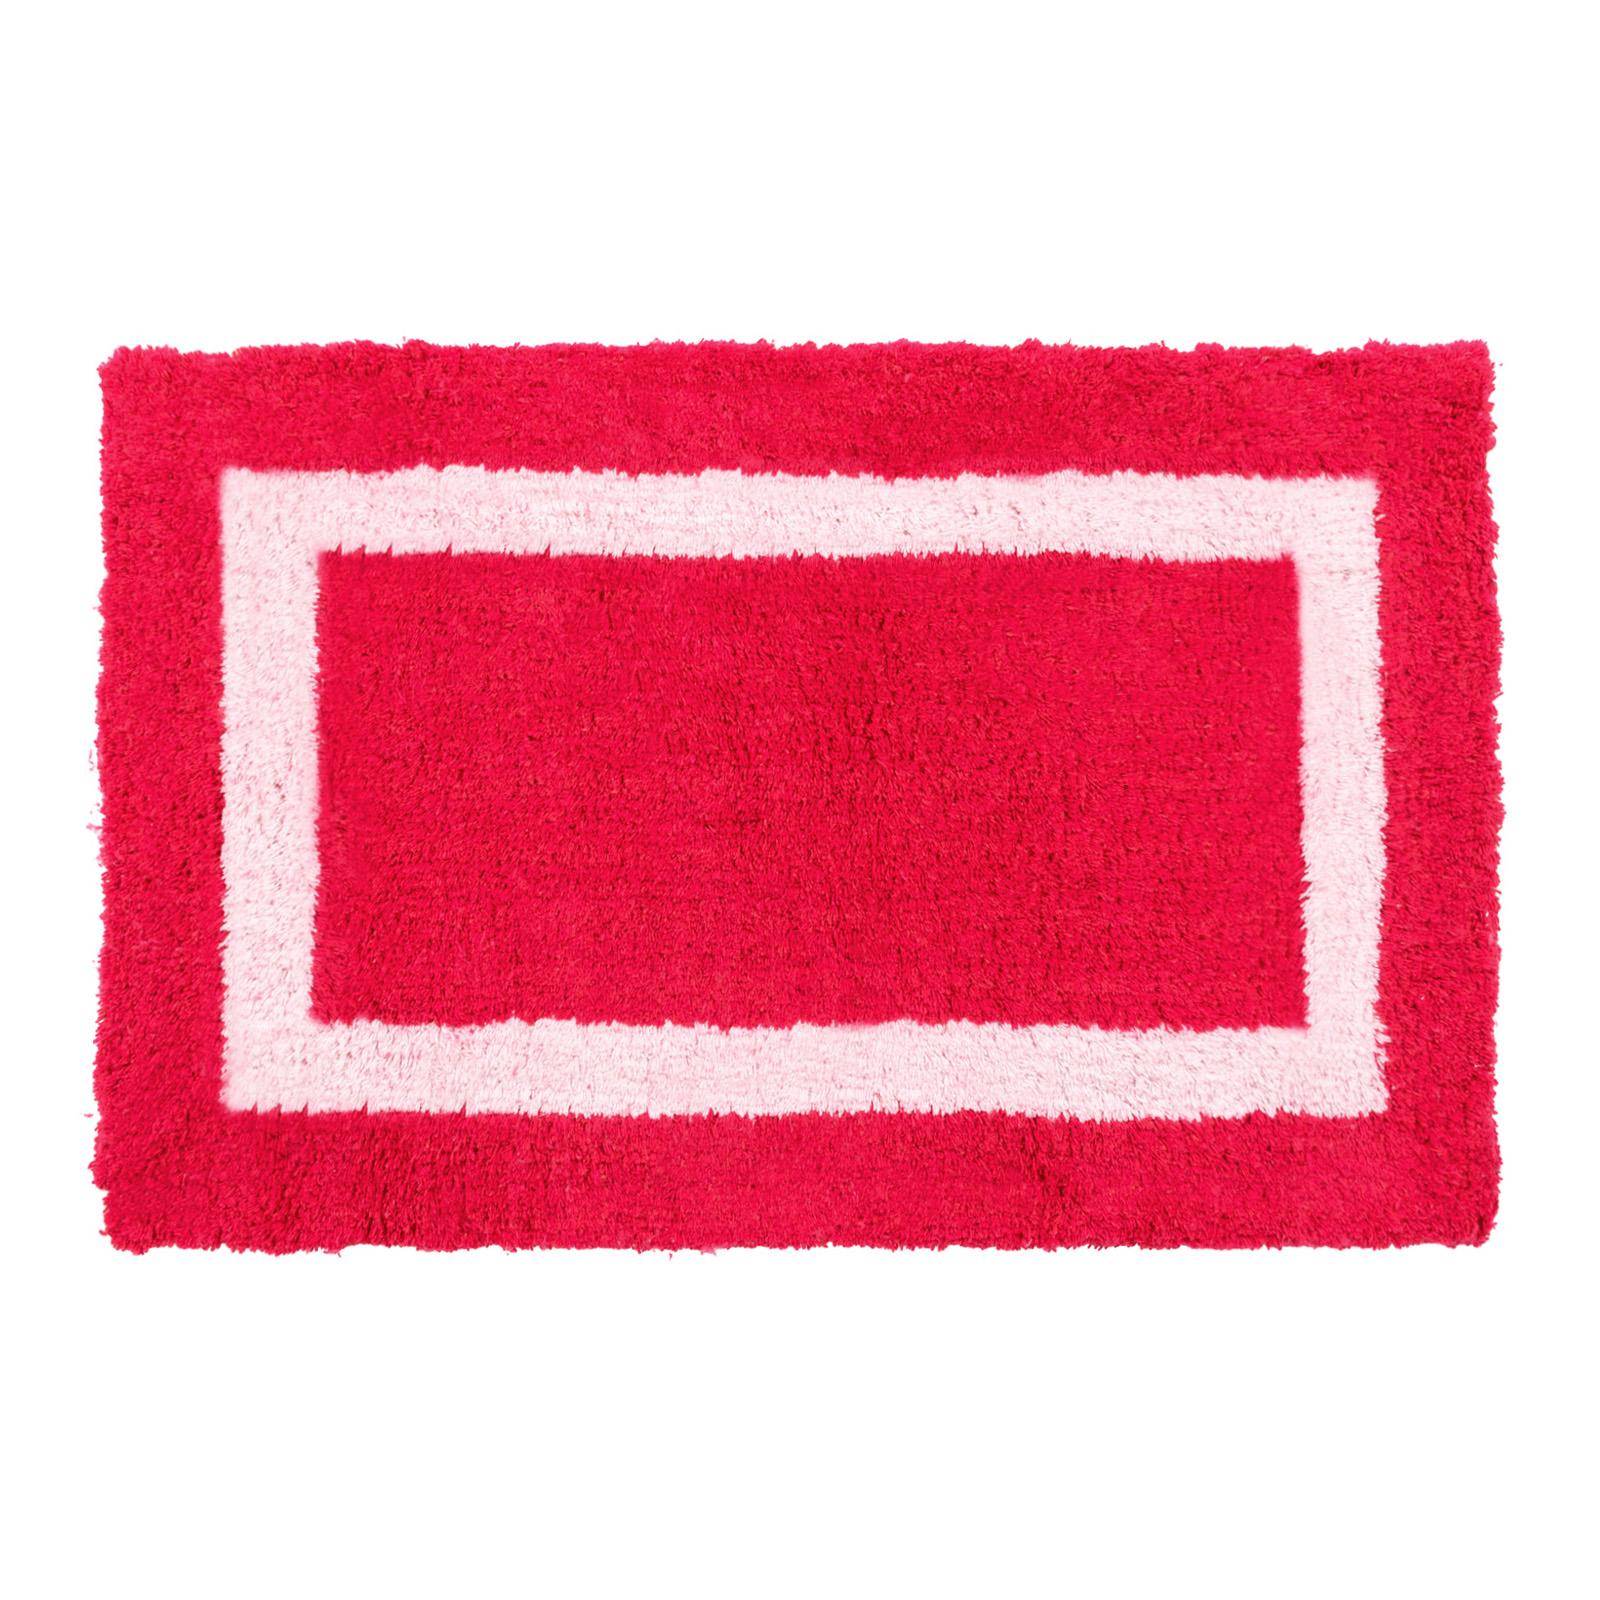 Tappeto rosso 50x80 cm per bagno in cotone con bordo ricamo tufting bagno